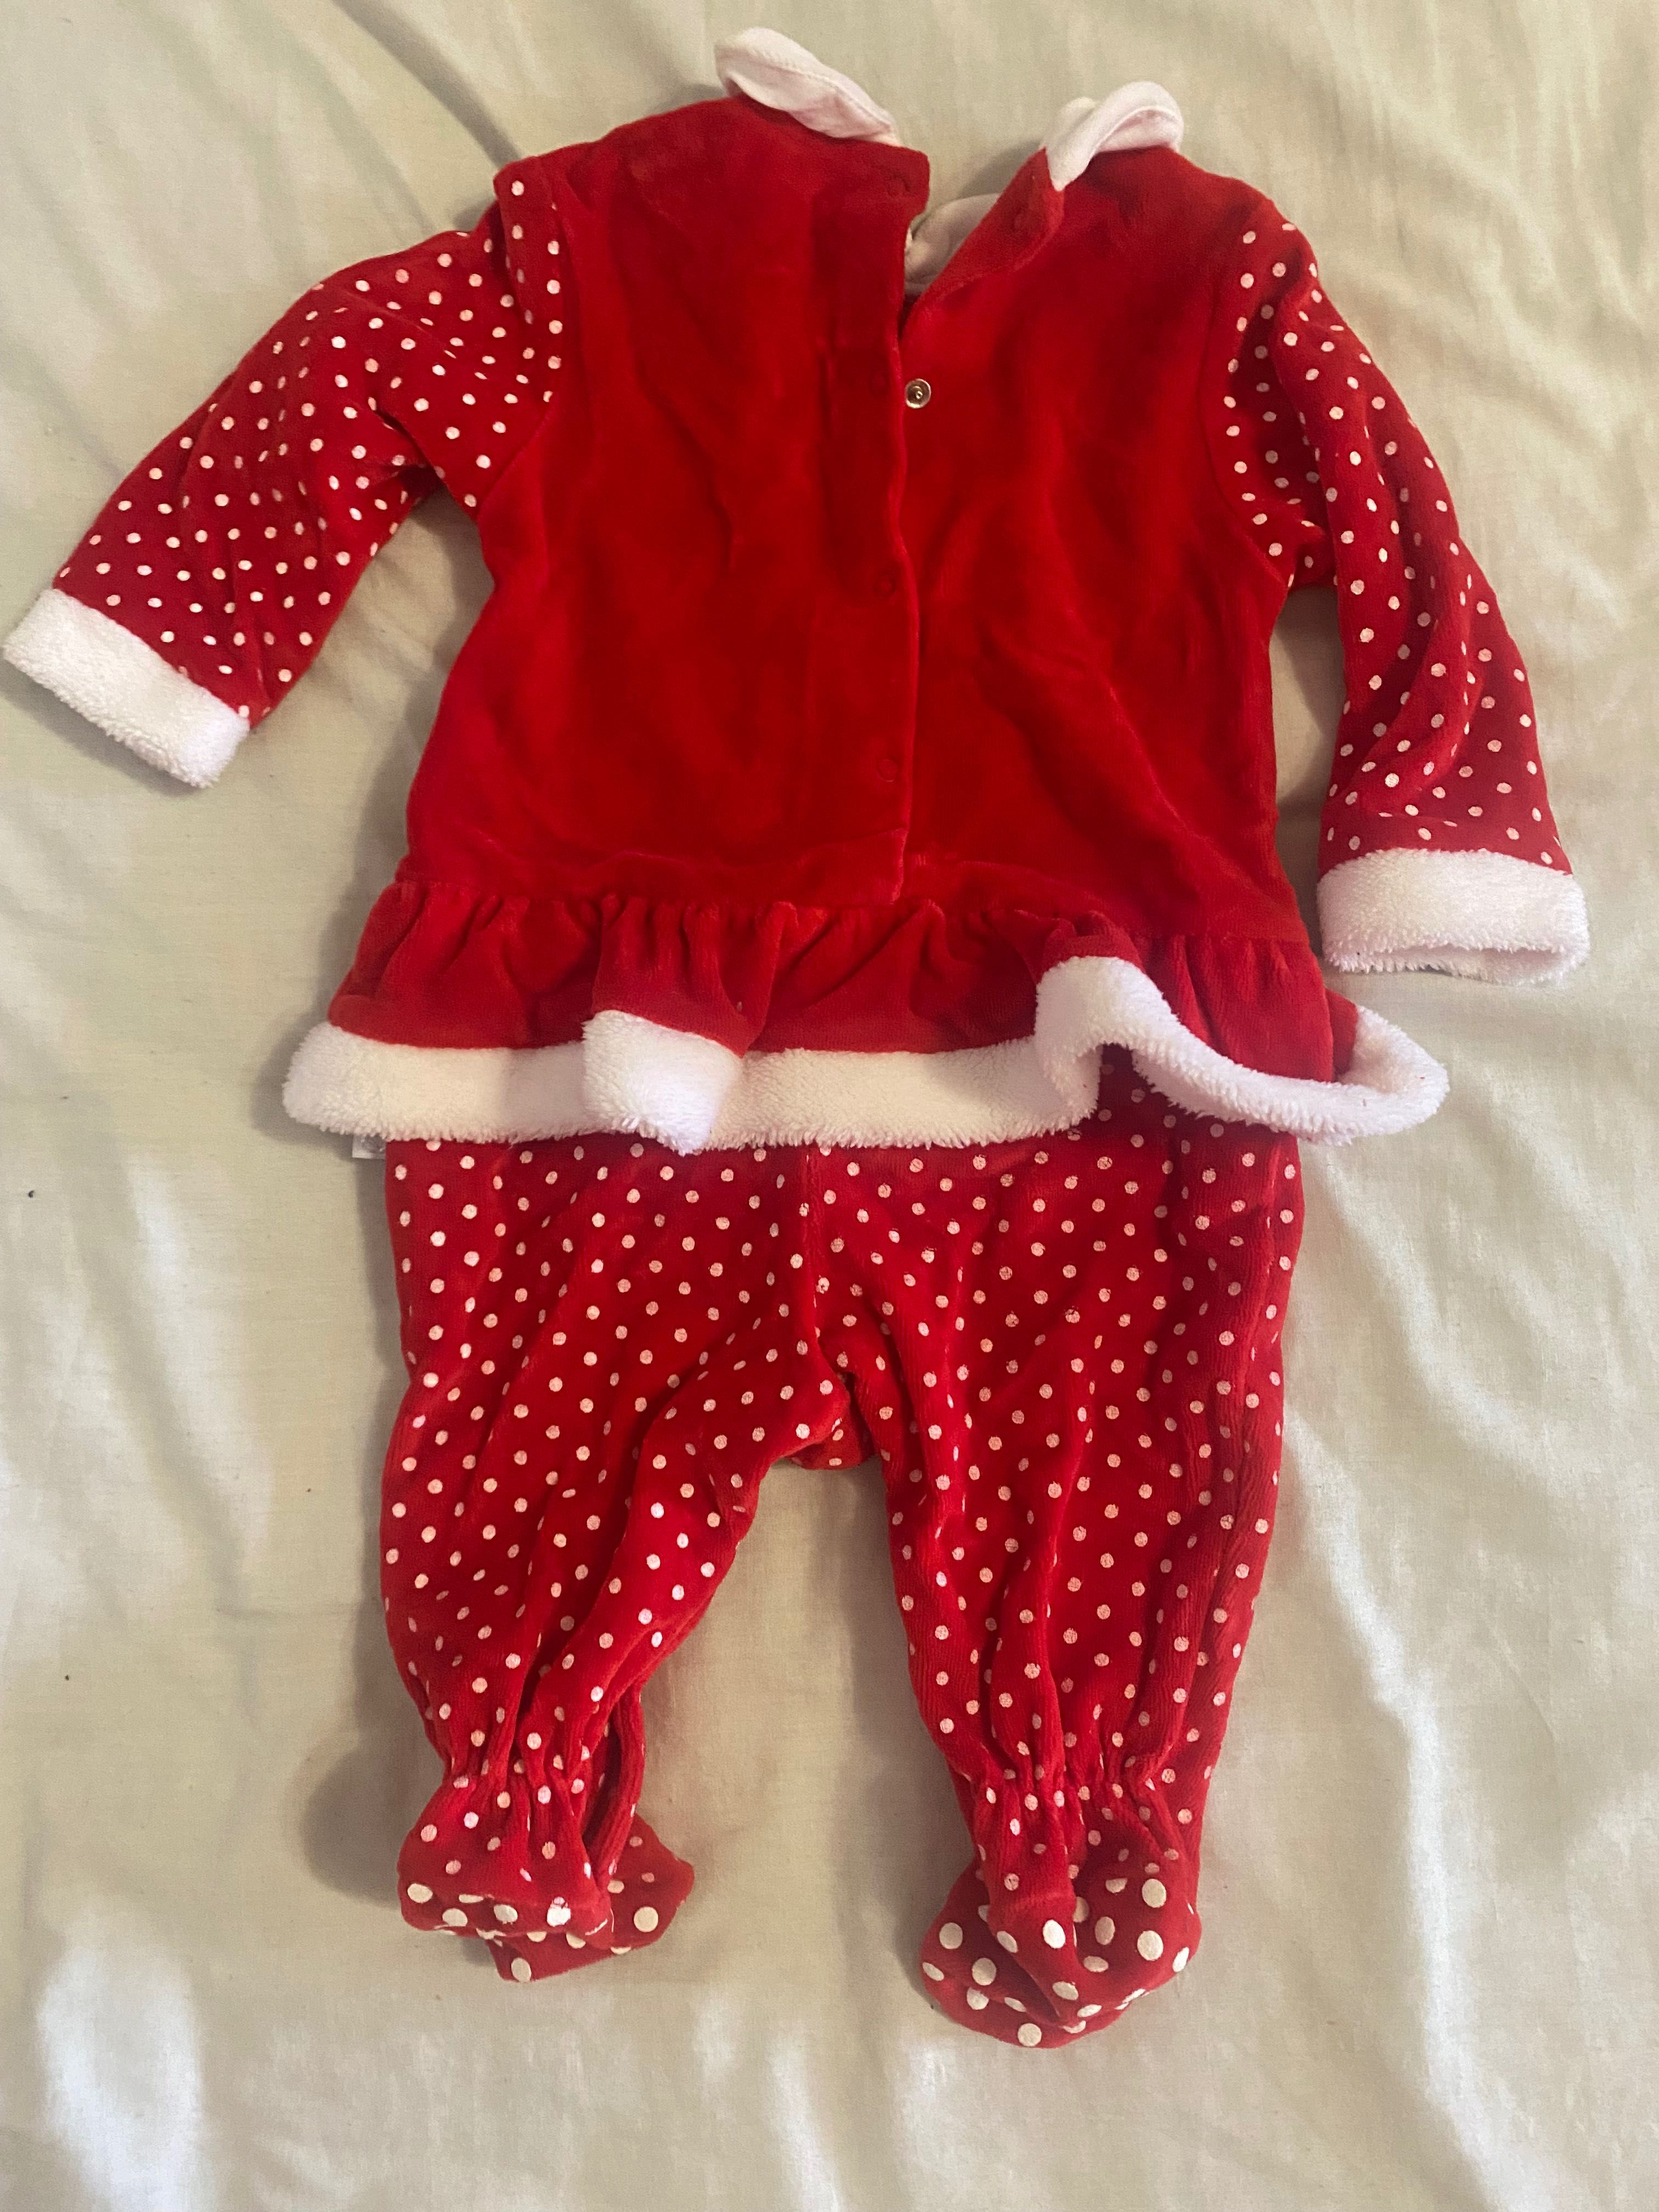 Святковий новорічний чоловічок (костюм) для дівчинки 9-12 місяців